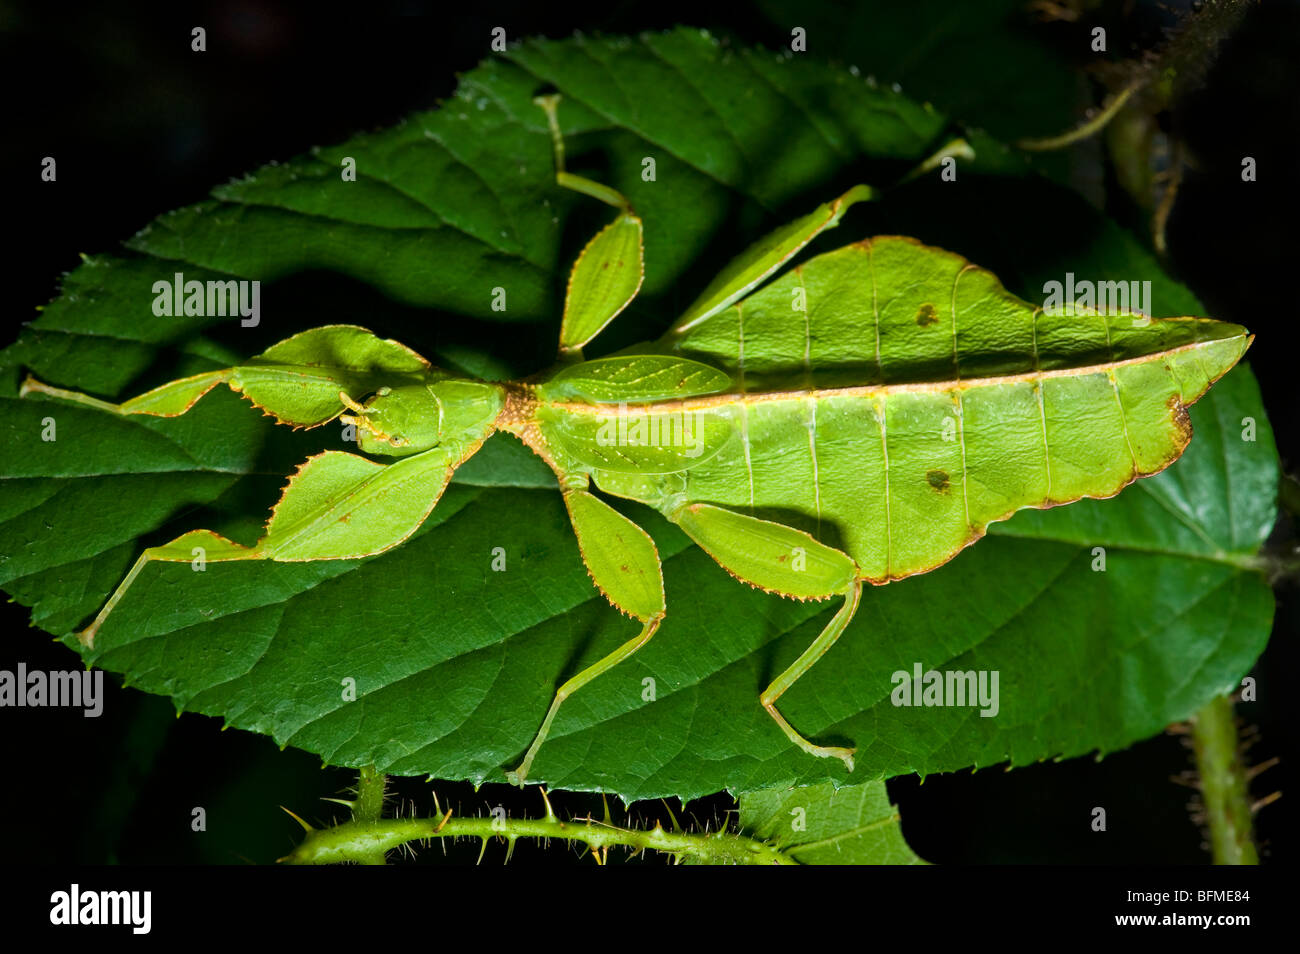 Phyllium Sp. Philippinen Blatt Insekt Spazierstock Aussehen von einem Blatt aussehen Leafinsect Tier grünes Blatt Blätter Stockfoto